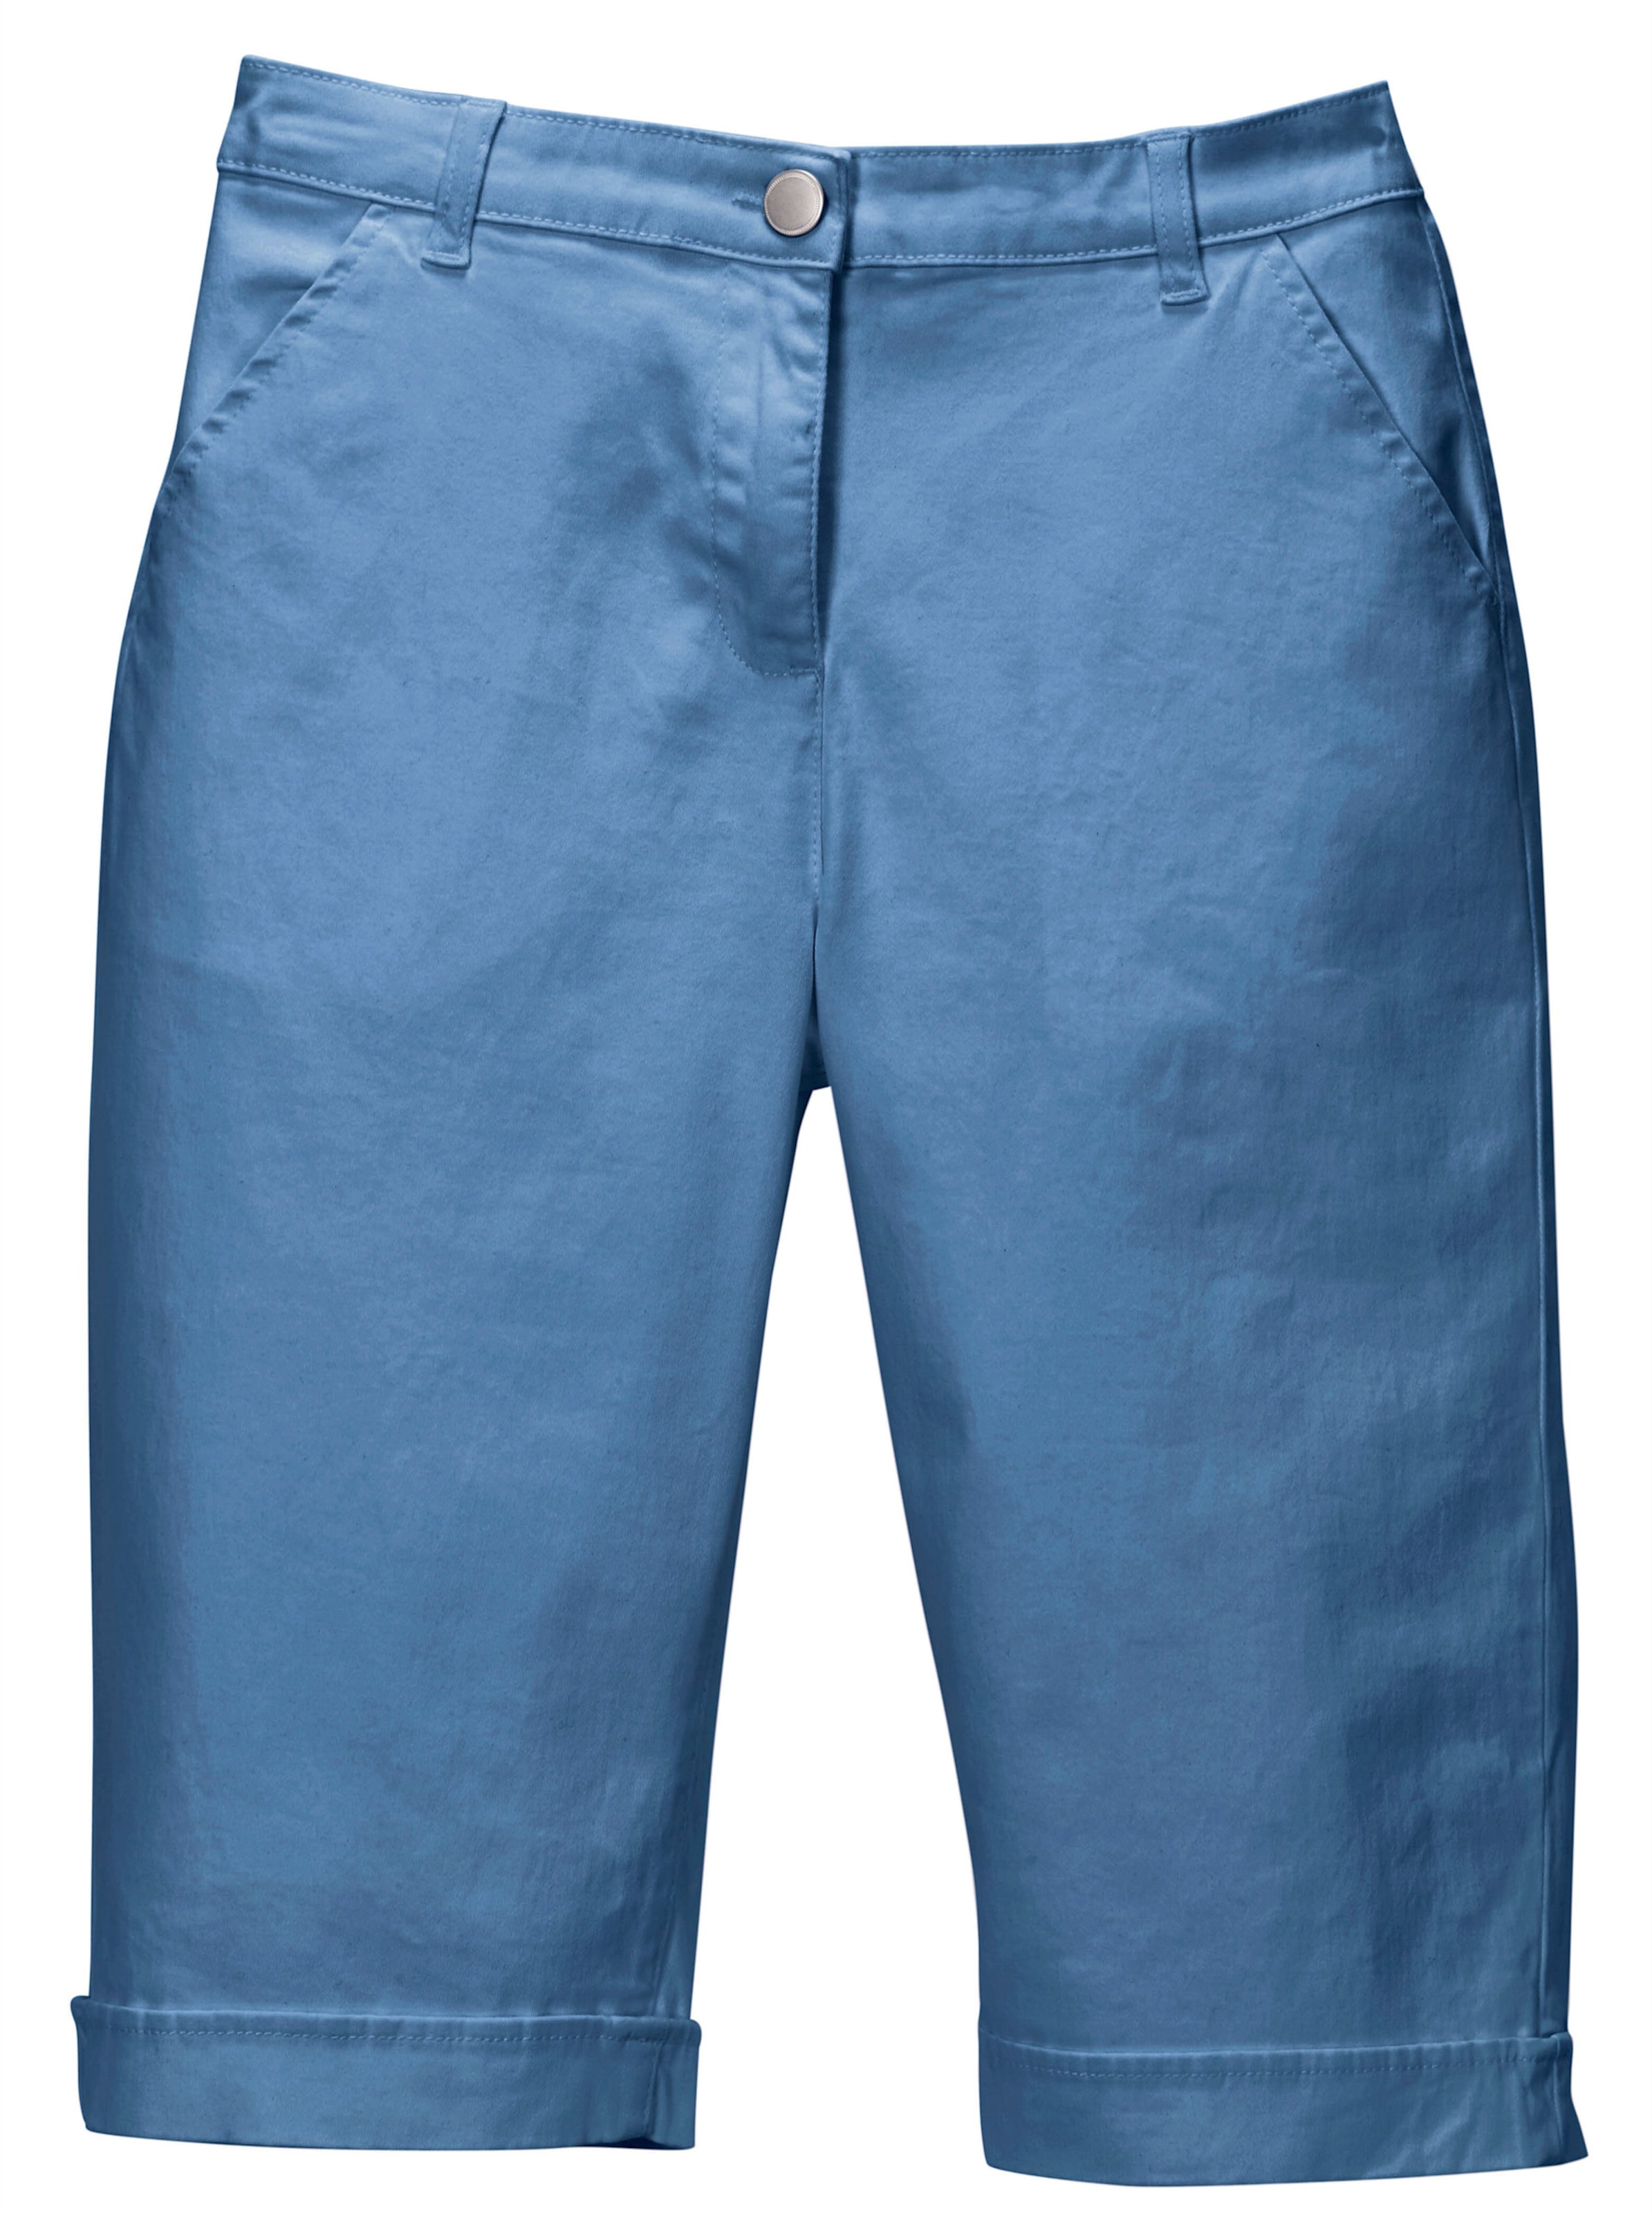 Vorne I günstig Kaufen-Jeansbermudas in blau von heine. Jeansbermudas in blau von heine <![CDATA[Lässige Jeans-Bermudas in aktuellen Sommerfarben. Mit rückwärtigem Dehnbund, Gürtelschlaufen sowie Knopf und Reißverschluss. 2 Taschen vorne, 2 imitierte Gesäßtaschen. Am Sau